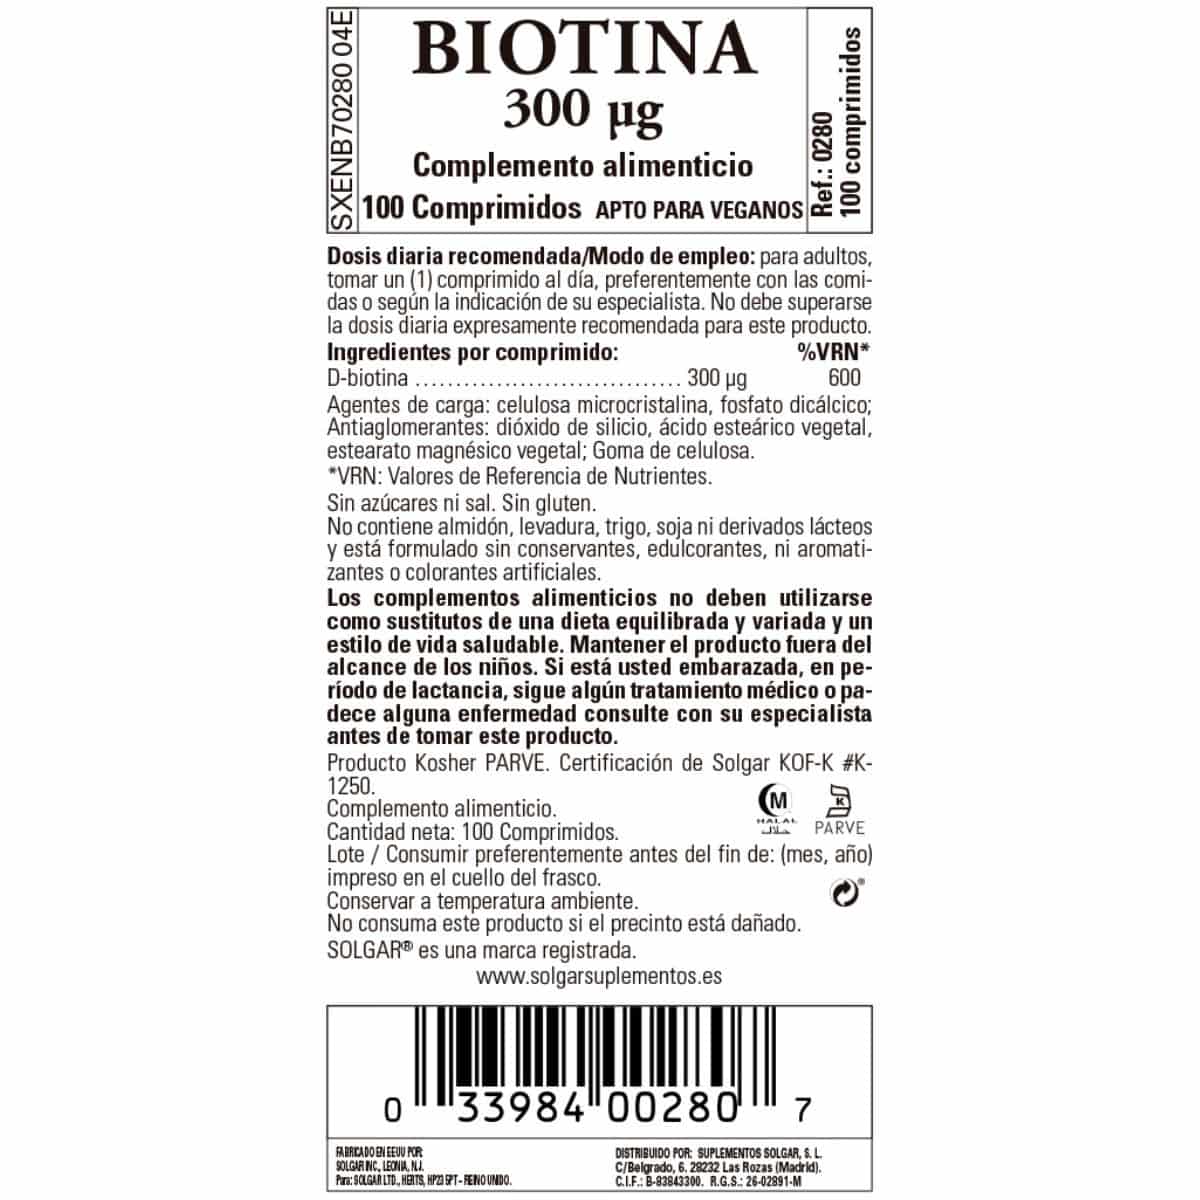 Biotina 300 cmg – 100 Comprimidos